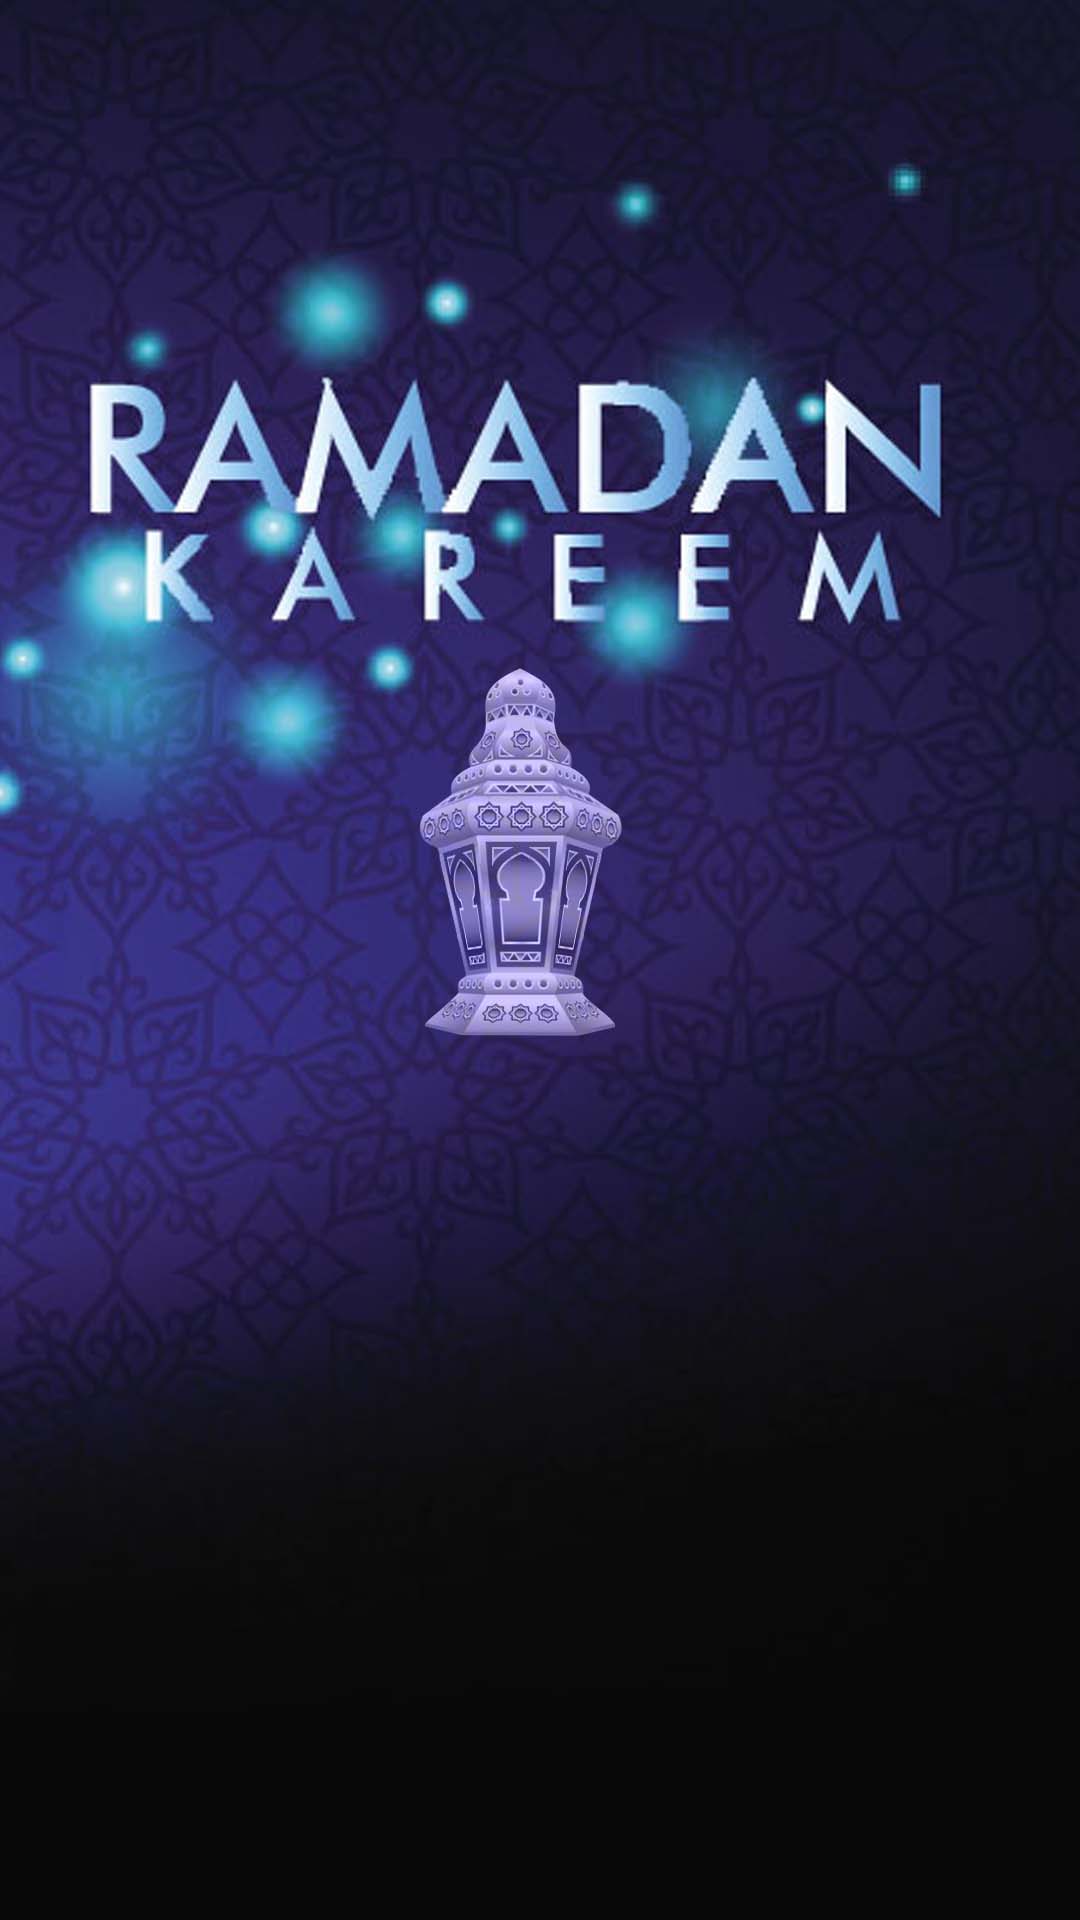 اجمل خلفيات الموبايل بمناسبه شهر رمضان 2020 D-4